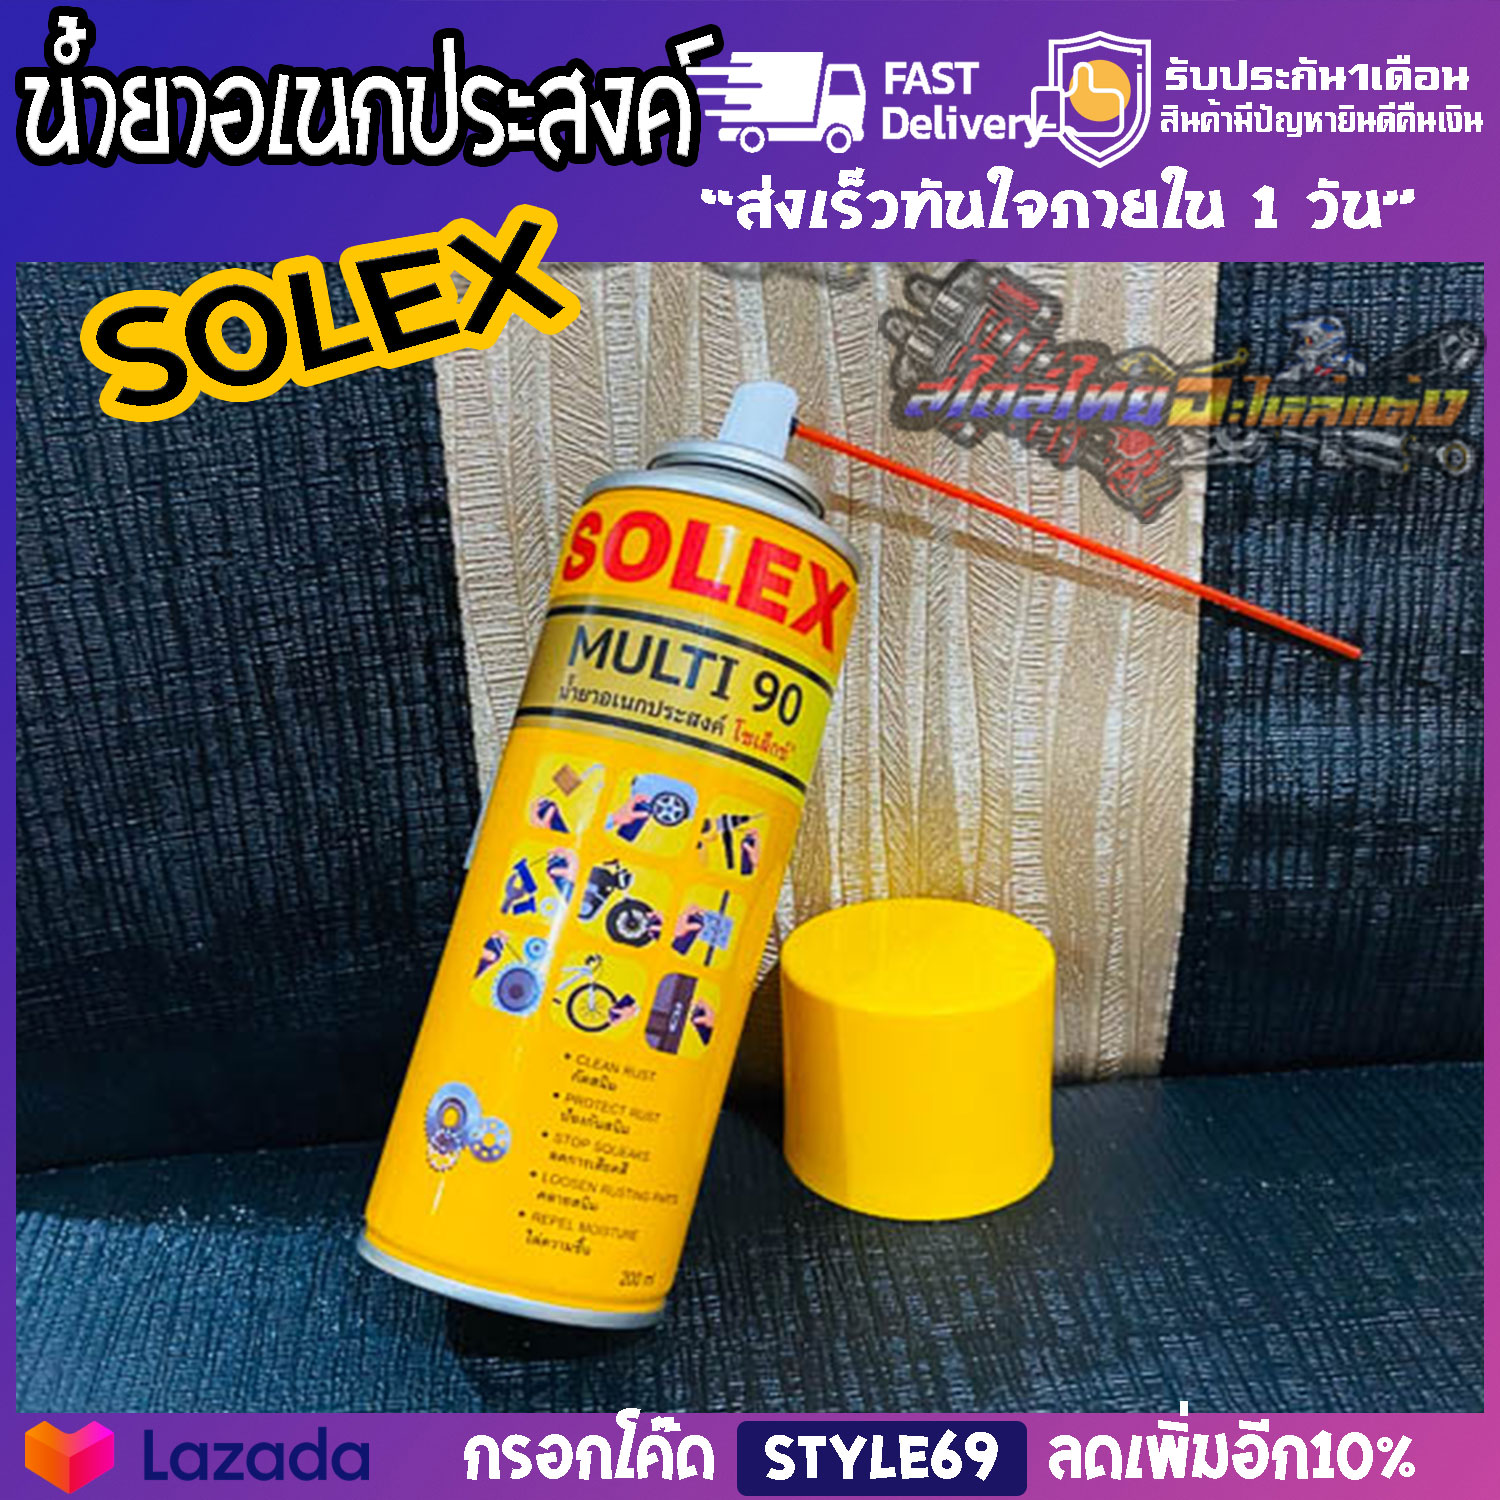 น้ำมันอเนกประสงค์ SOLEX ขวดสีเหลือง 200 ML.ป้องกันความชื้นเเละสนิม  หล่อลื่นชิ้นส่วนต่างๆ ใช้ได้ สารพัดประโยชน์ สําหรับใช้ฉีดกันสนิมทั่วไป สินค้ารับประกันทุกชิ้น อะไหล่เเต่งมอเตอร์ไซค์  Thai Style Racing